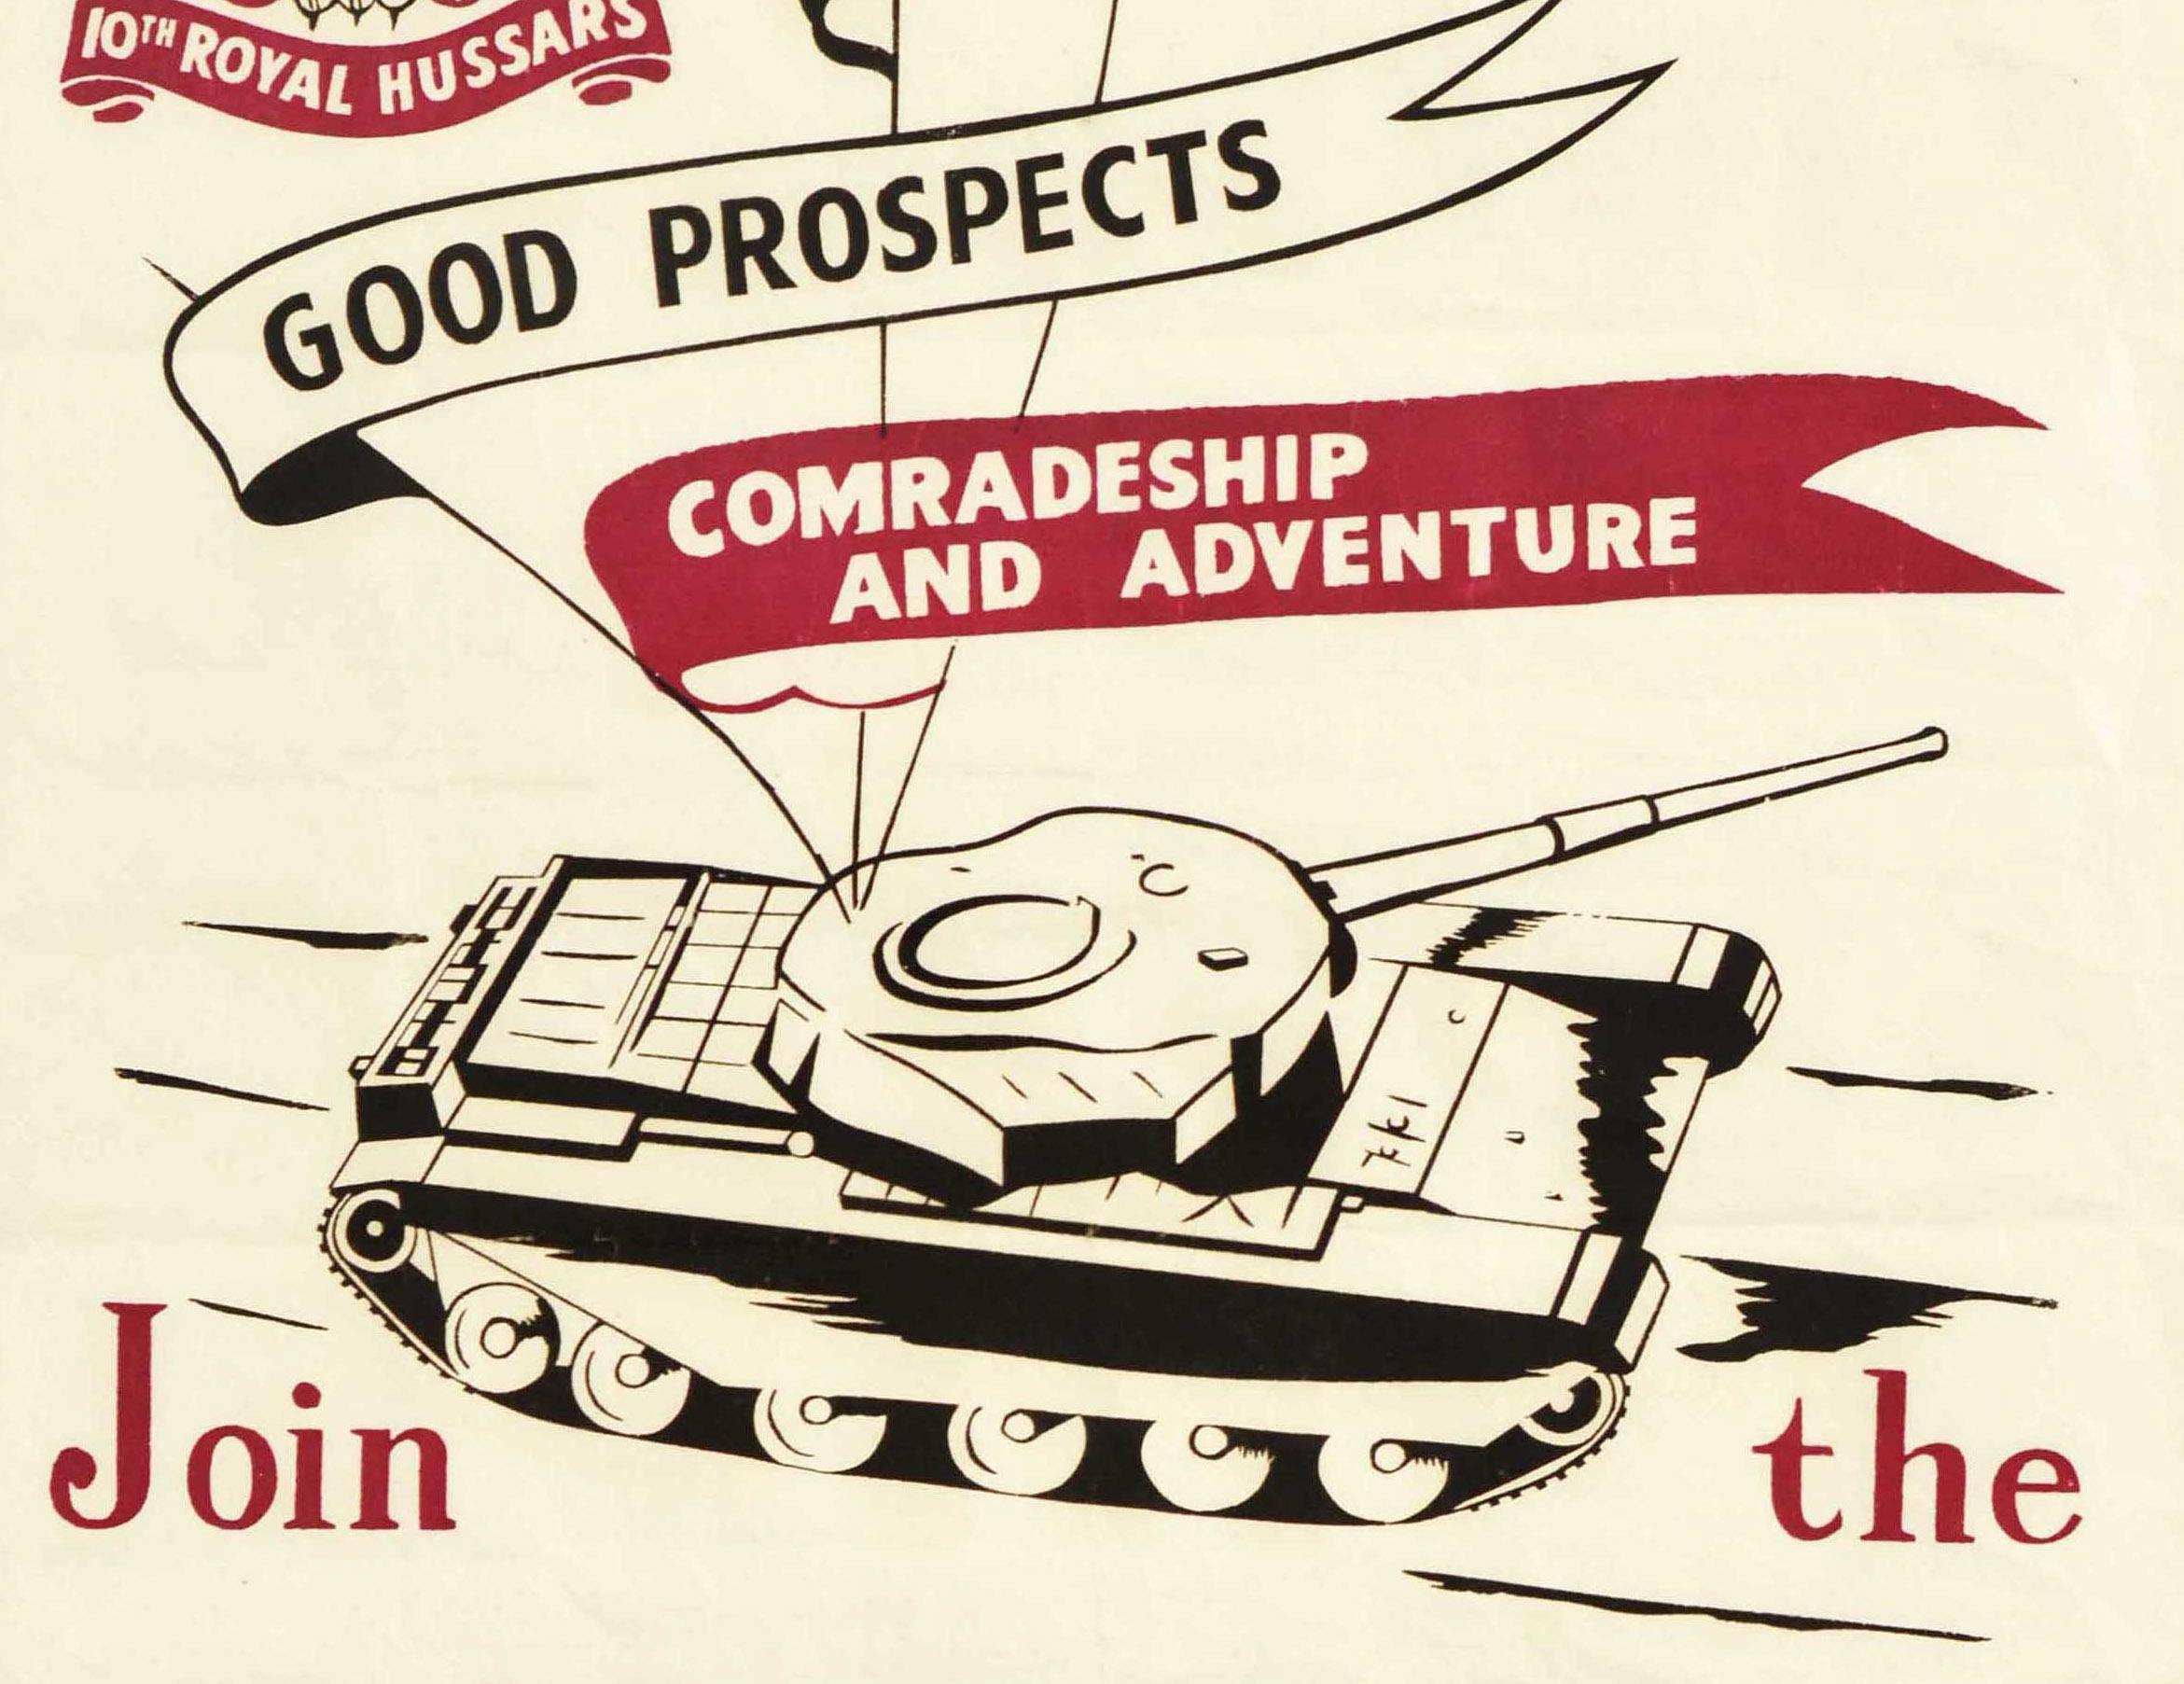 Affiche de recrutement militaire vintage originale présentant l'illustration d'un char d'assaut avec le texte suivant sur trois drapeaux au-dessus - Une vie d'homme / De bonnes perspectives / Camaraderie et aventure - sous la fleur de lis de la